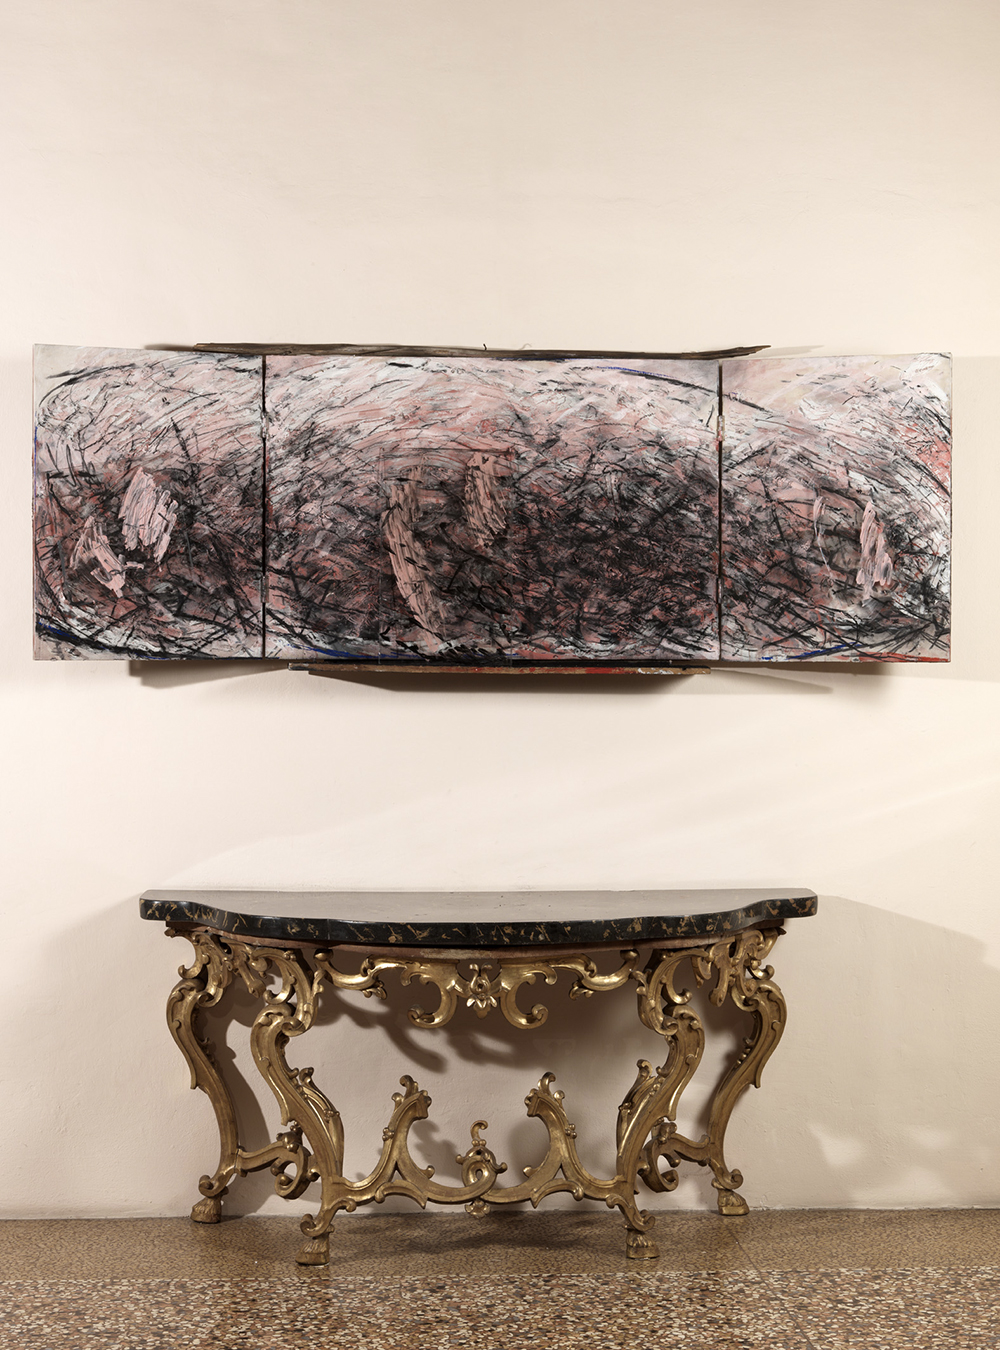 Retablo, 1986, tecnica mista, ferro, vetro e legno su tavola, cm 91,5x246,5x21,6 aperto